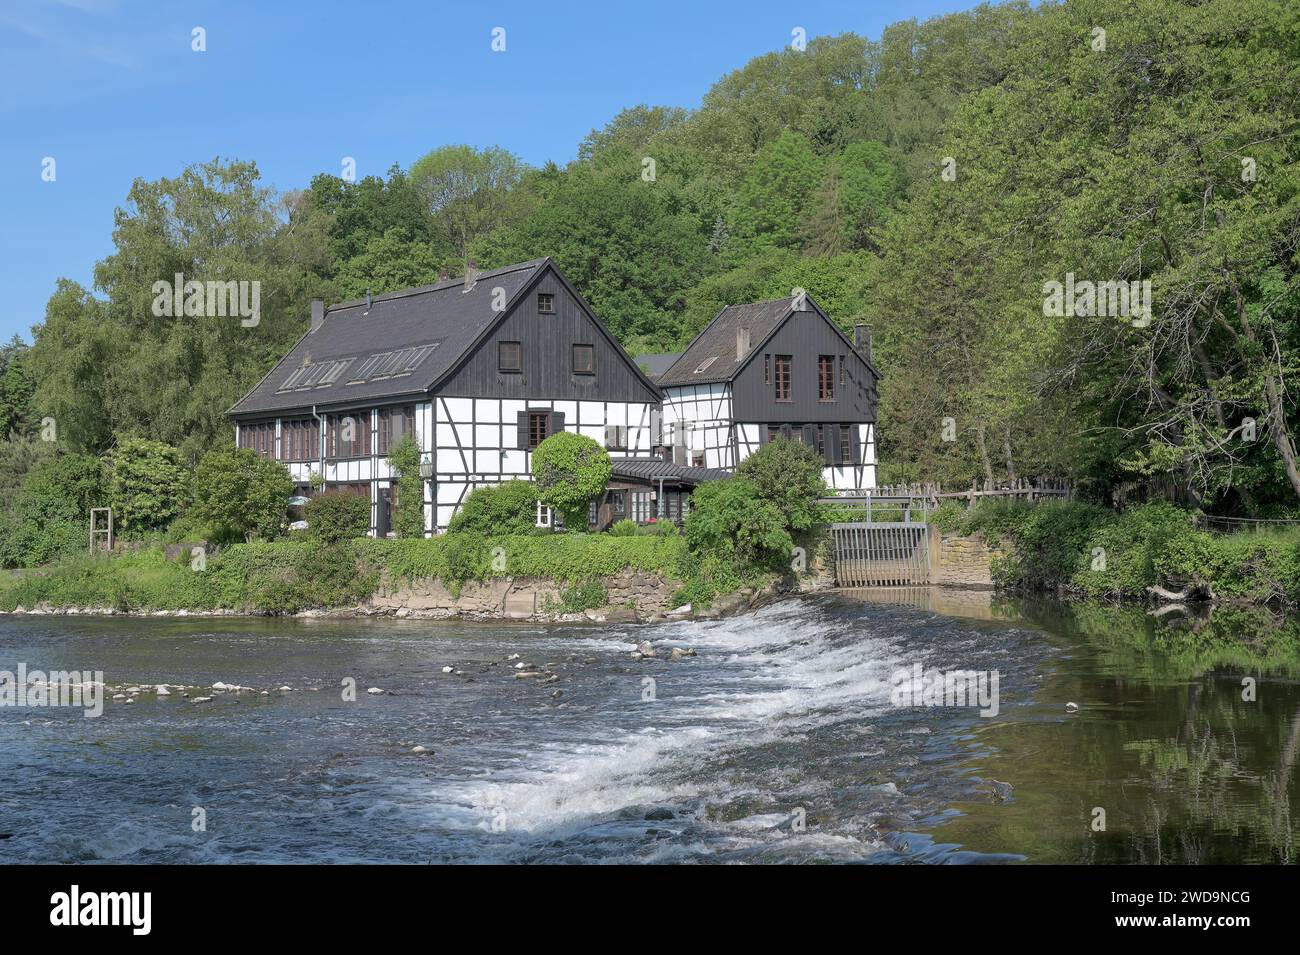 La storica casa di Grinding di nome Wipperkotten a Wipperaue presso il fiume Wupper, Bergisches Land, Renania settentrionale-Vestfalia, Germania Foto Stock